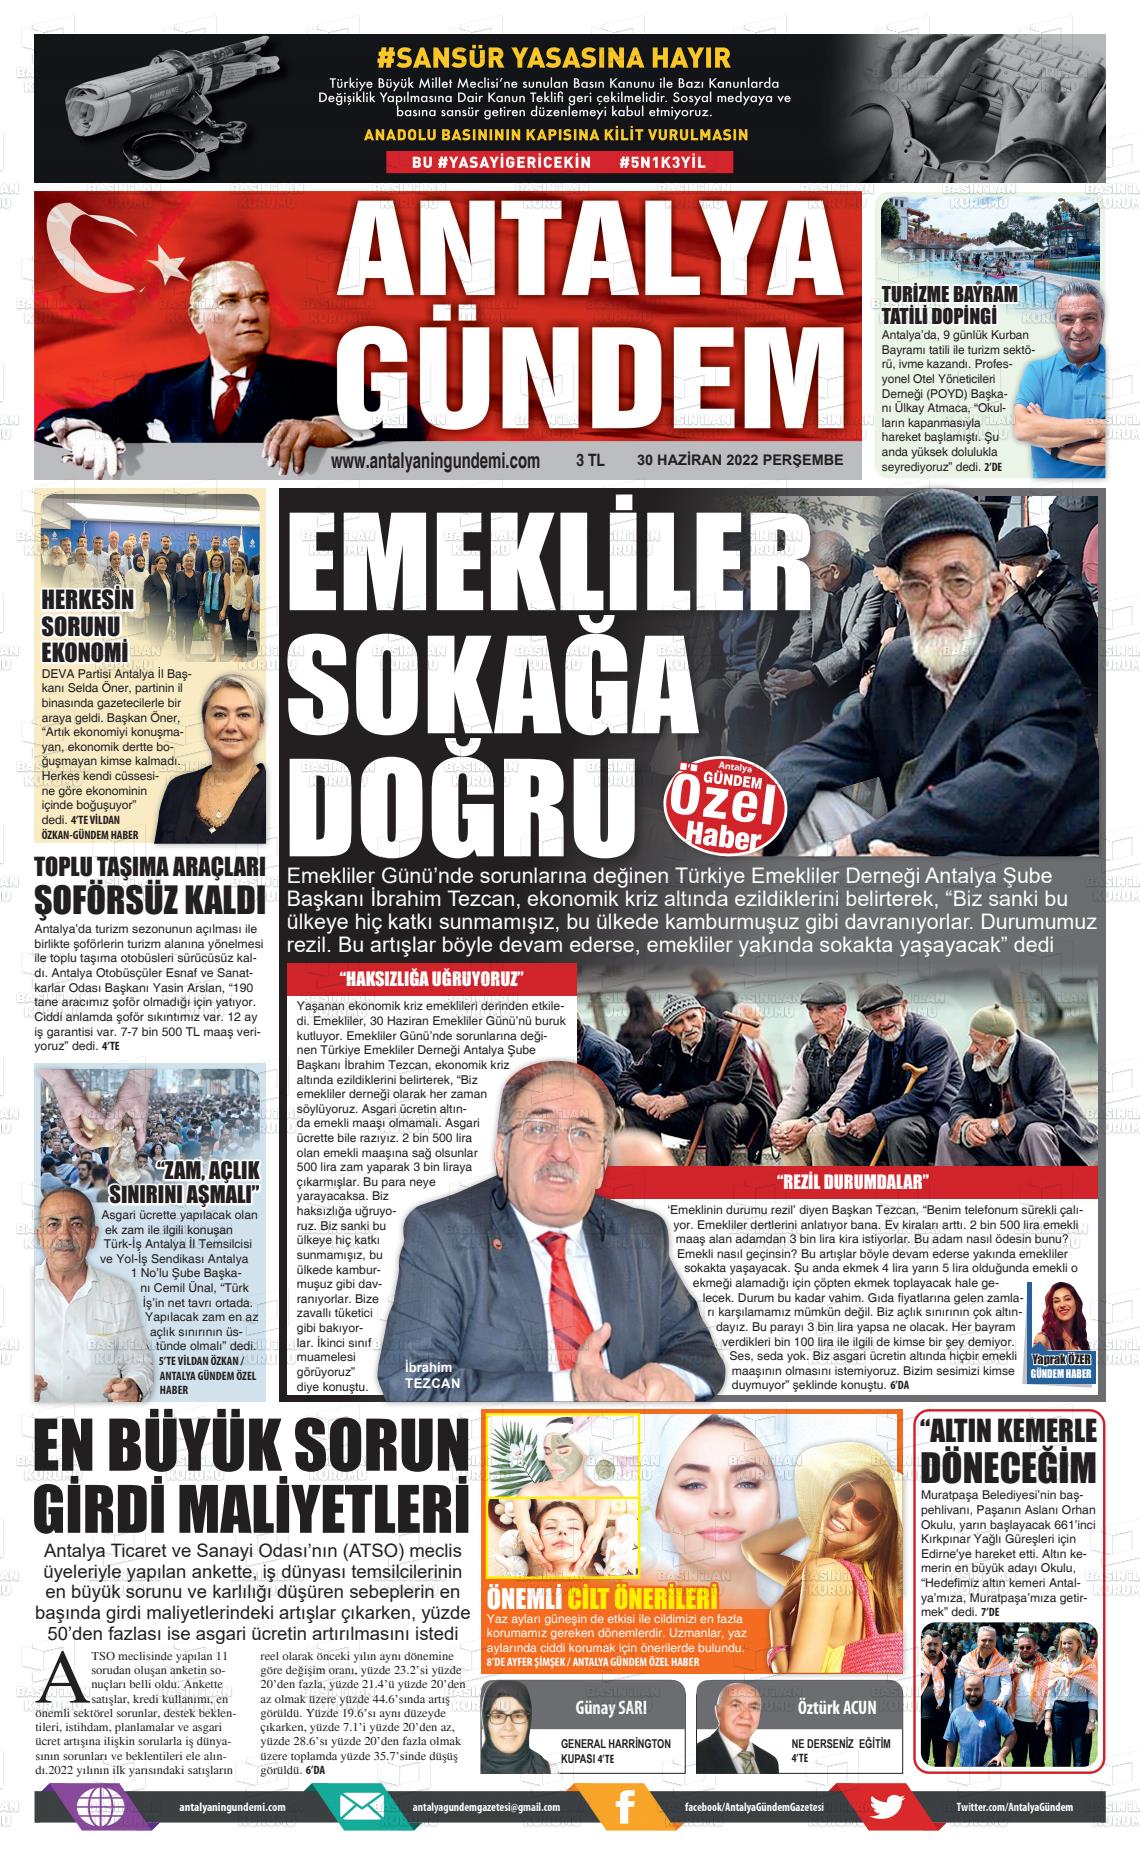 02 Temmuz 2022 Antalya'nın Gündemi Gazete Manşeti